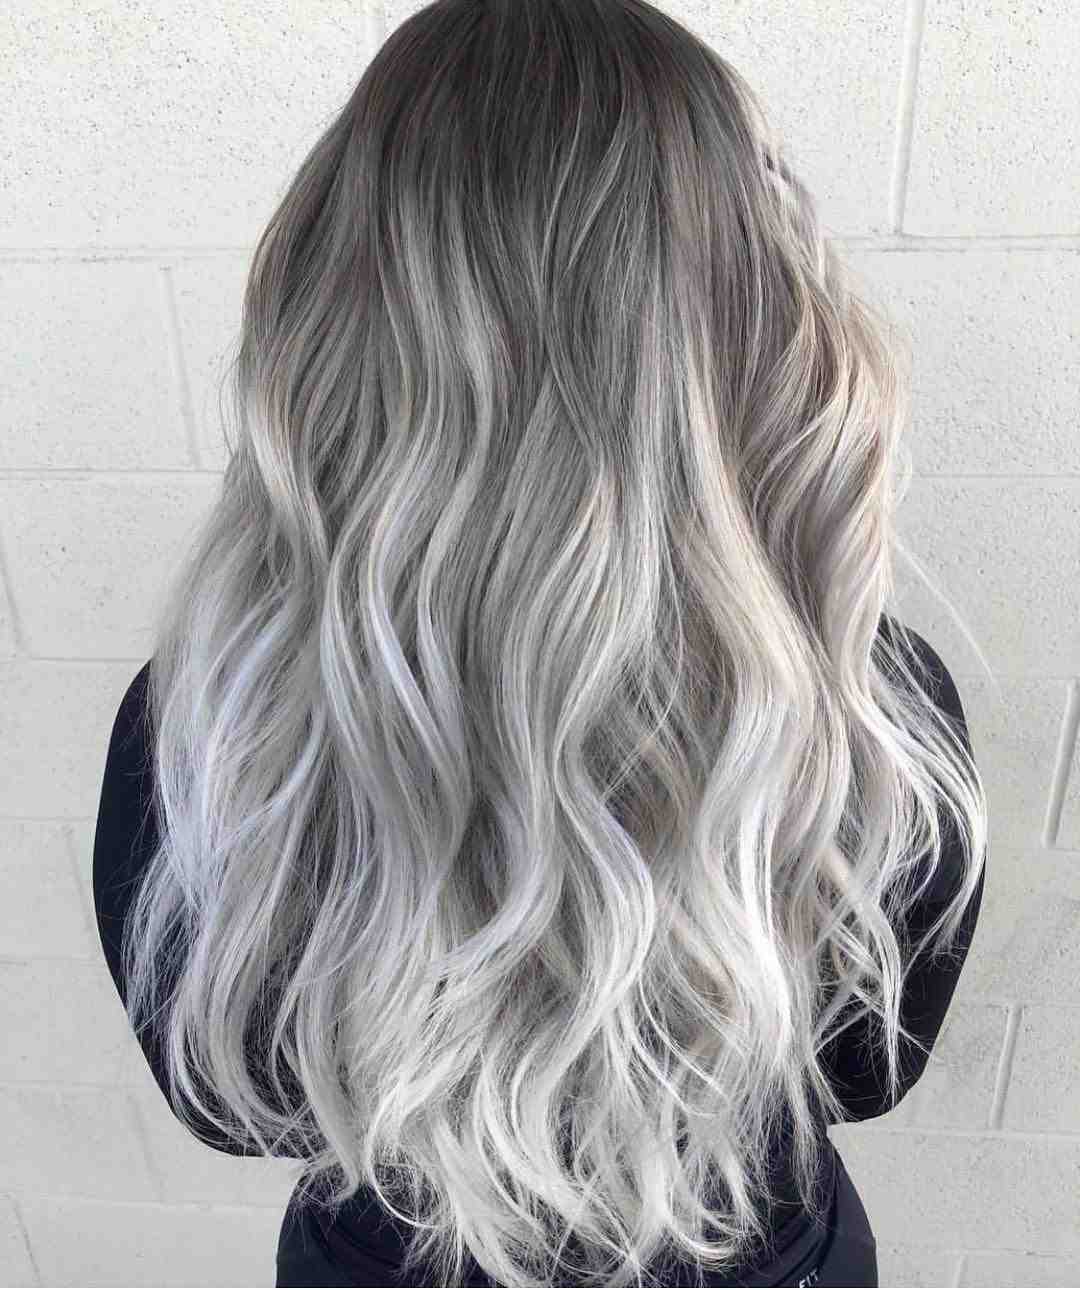 Silber weiße haare